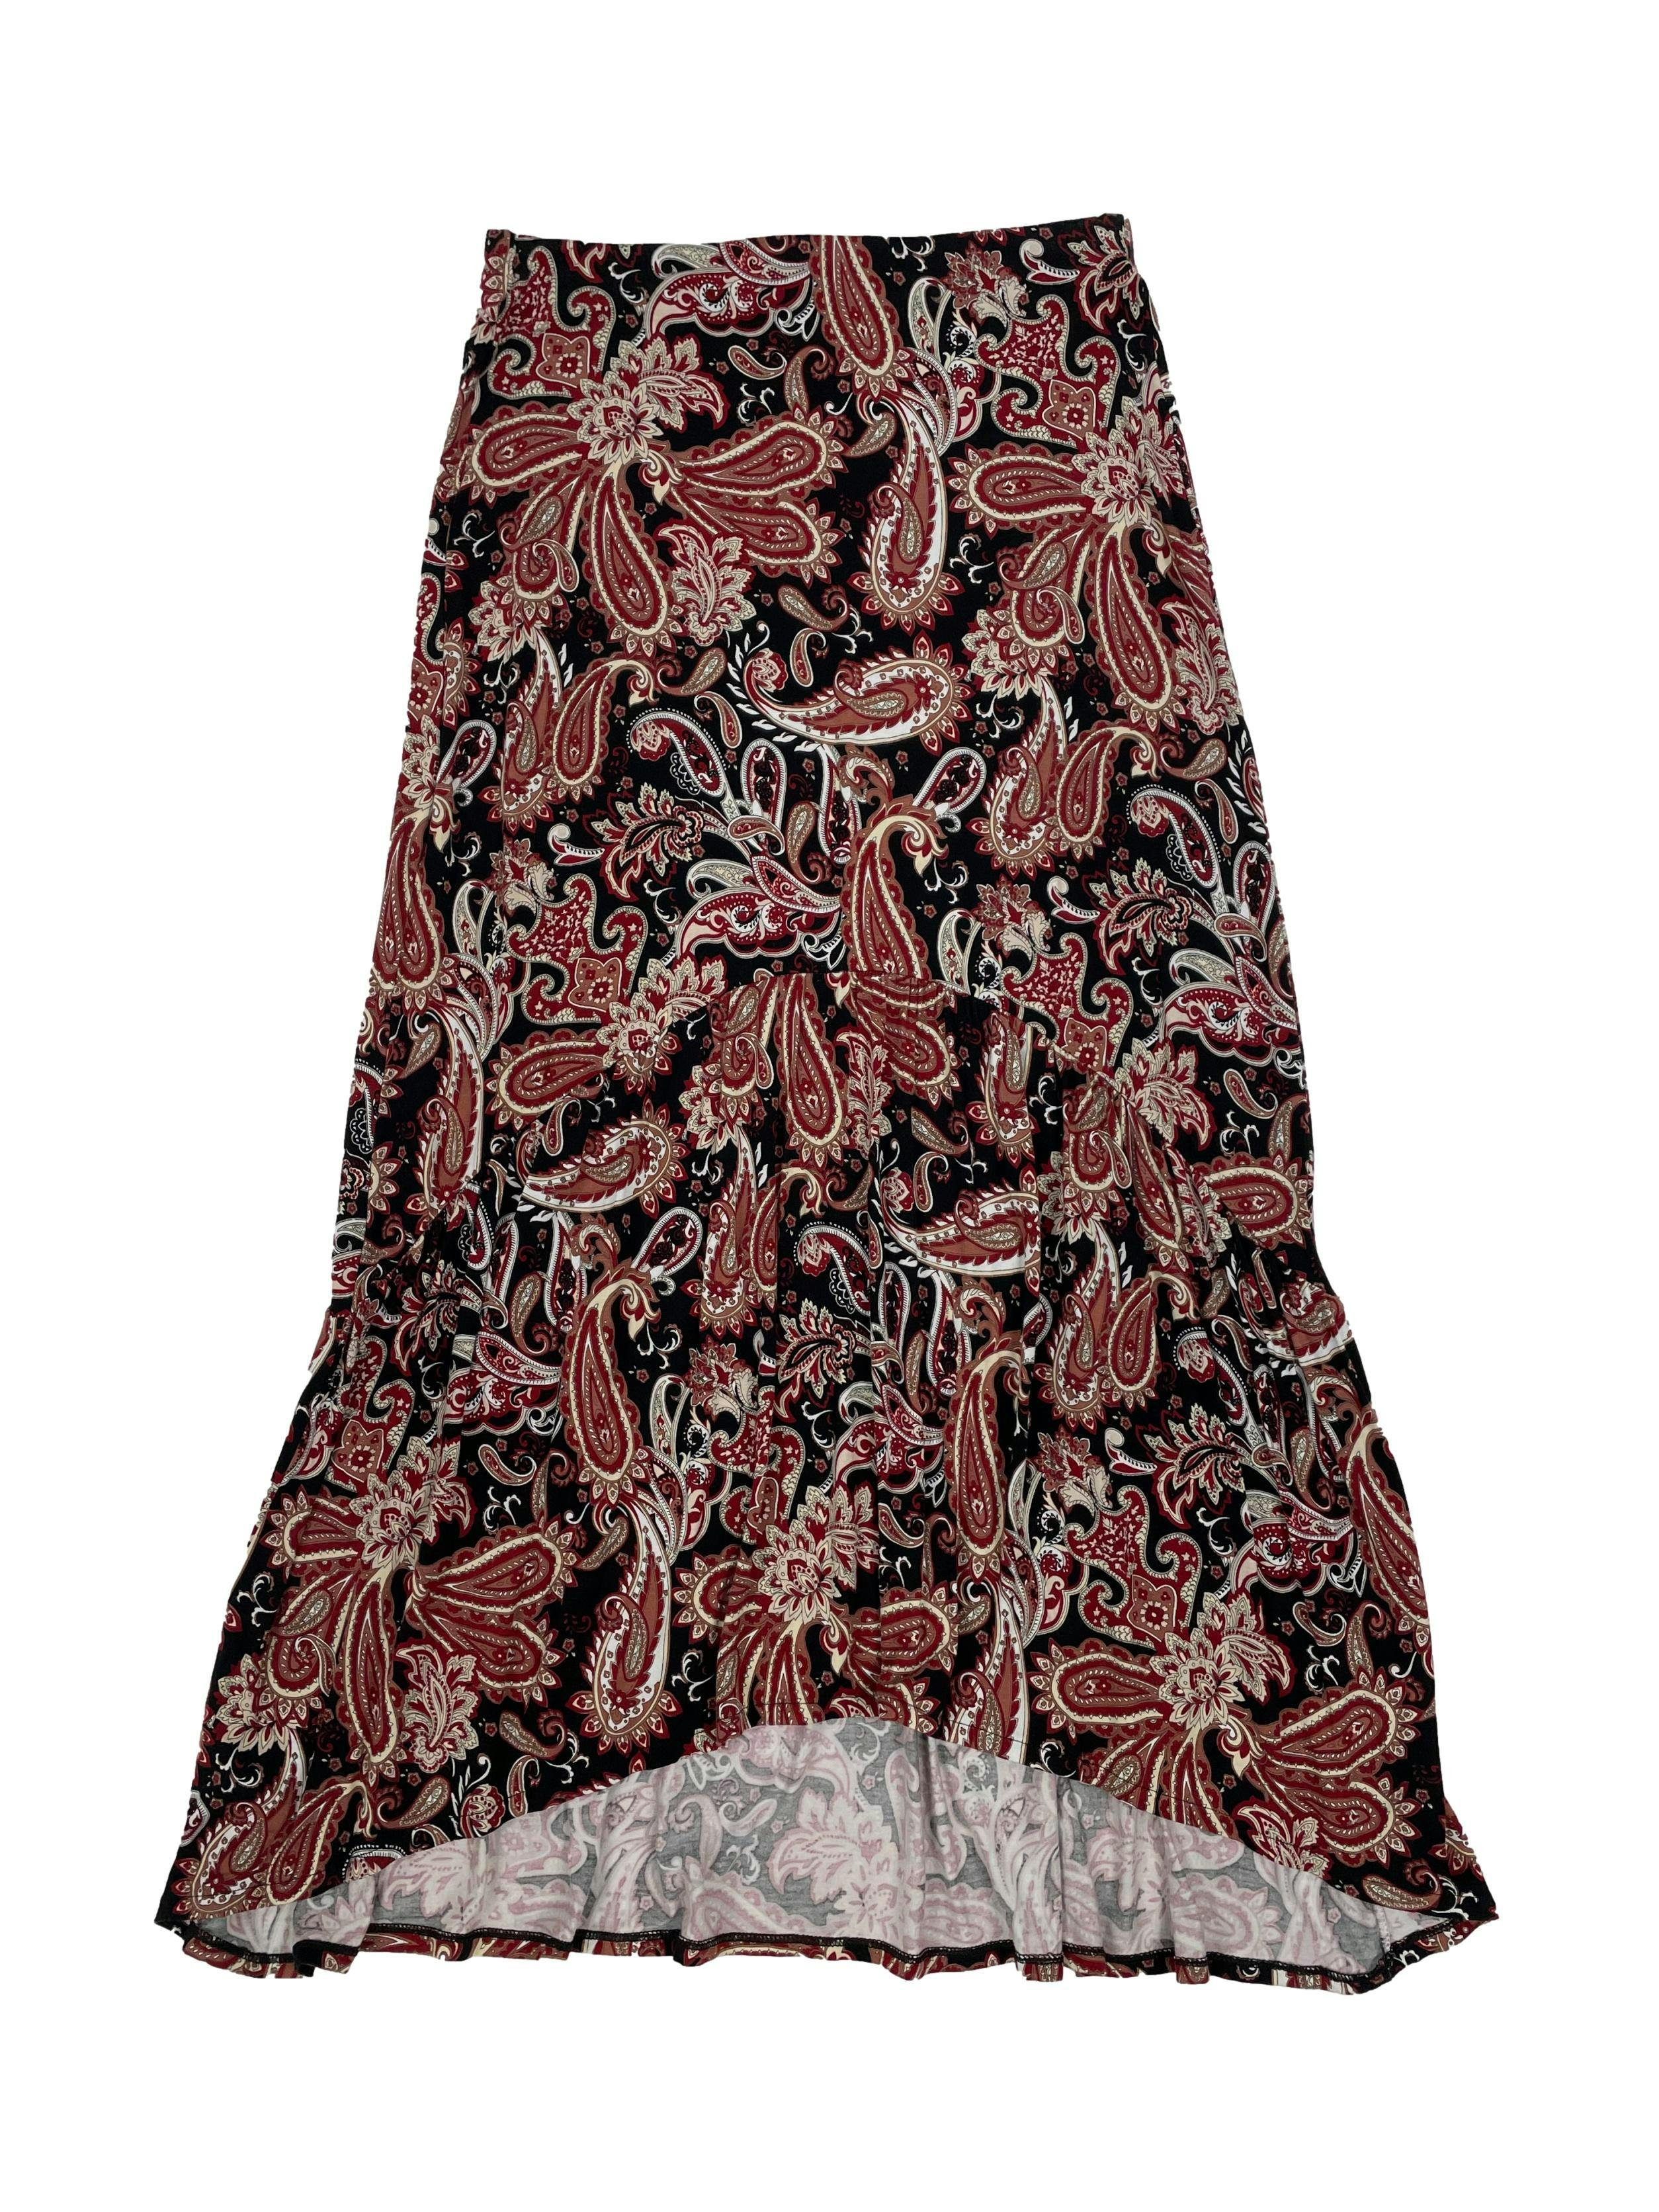 Falda midi Mango negra con estampado paisley en tonos vino y beige, tiene elástico en cintura y fruncido en la parte inferior. Cintura 68cm, Largo 78-86 cm.